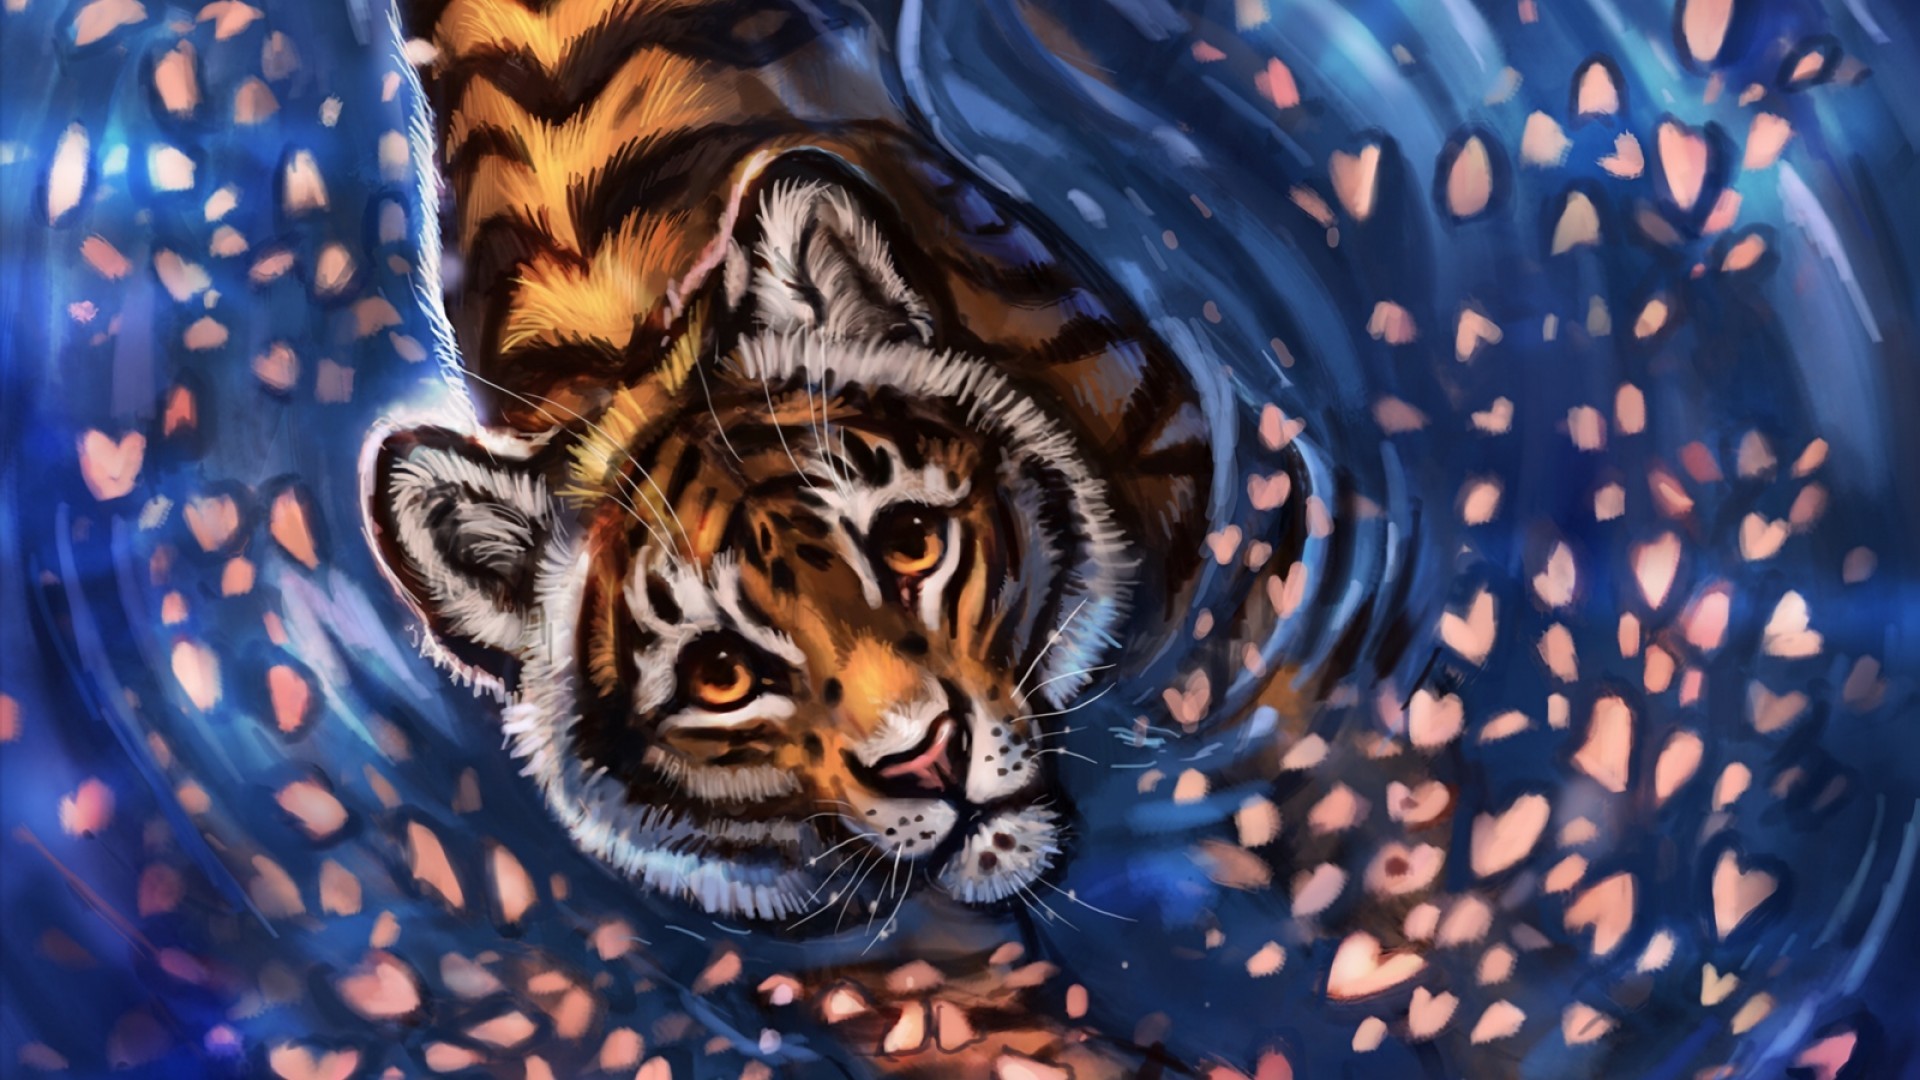 Fantasy Tiger wallpaper hd